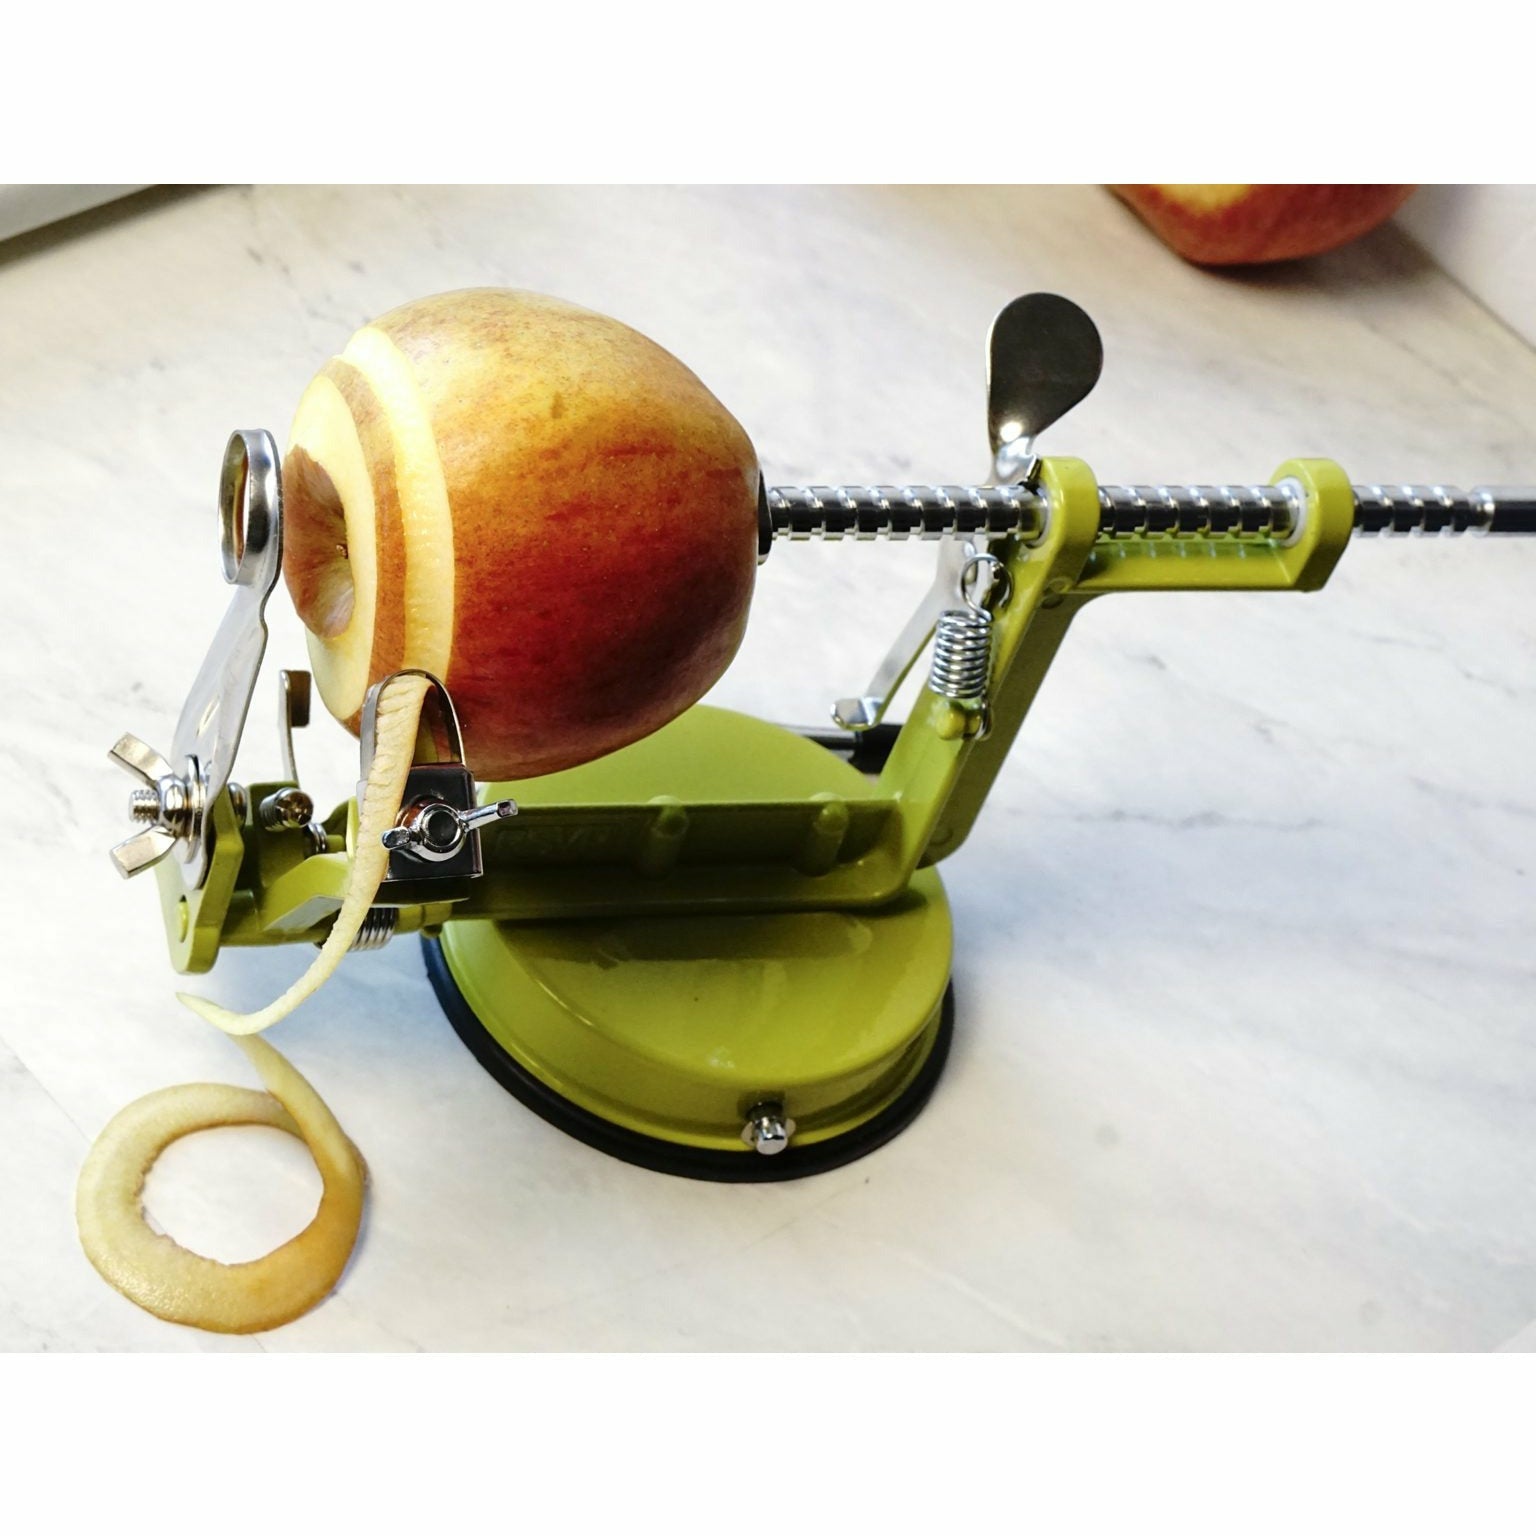 GEFU 3-in-1 Apple Peeler for Peeling, Cutting & Coring